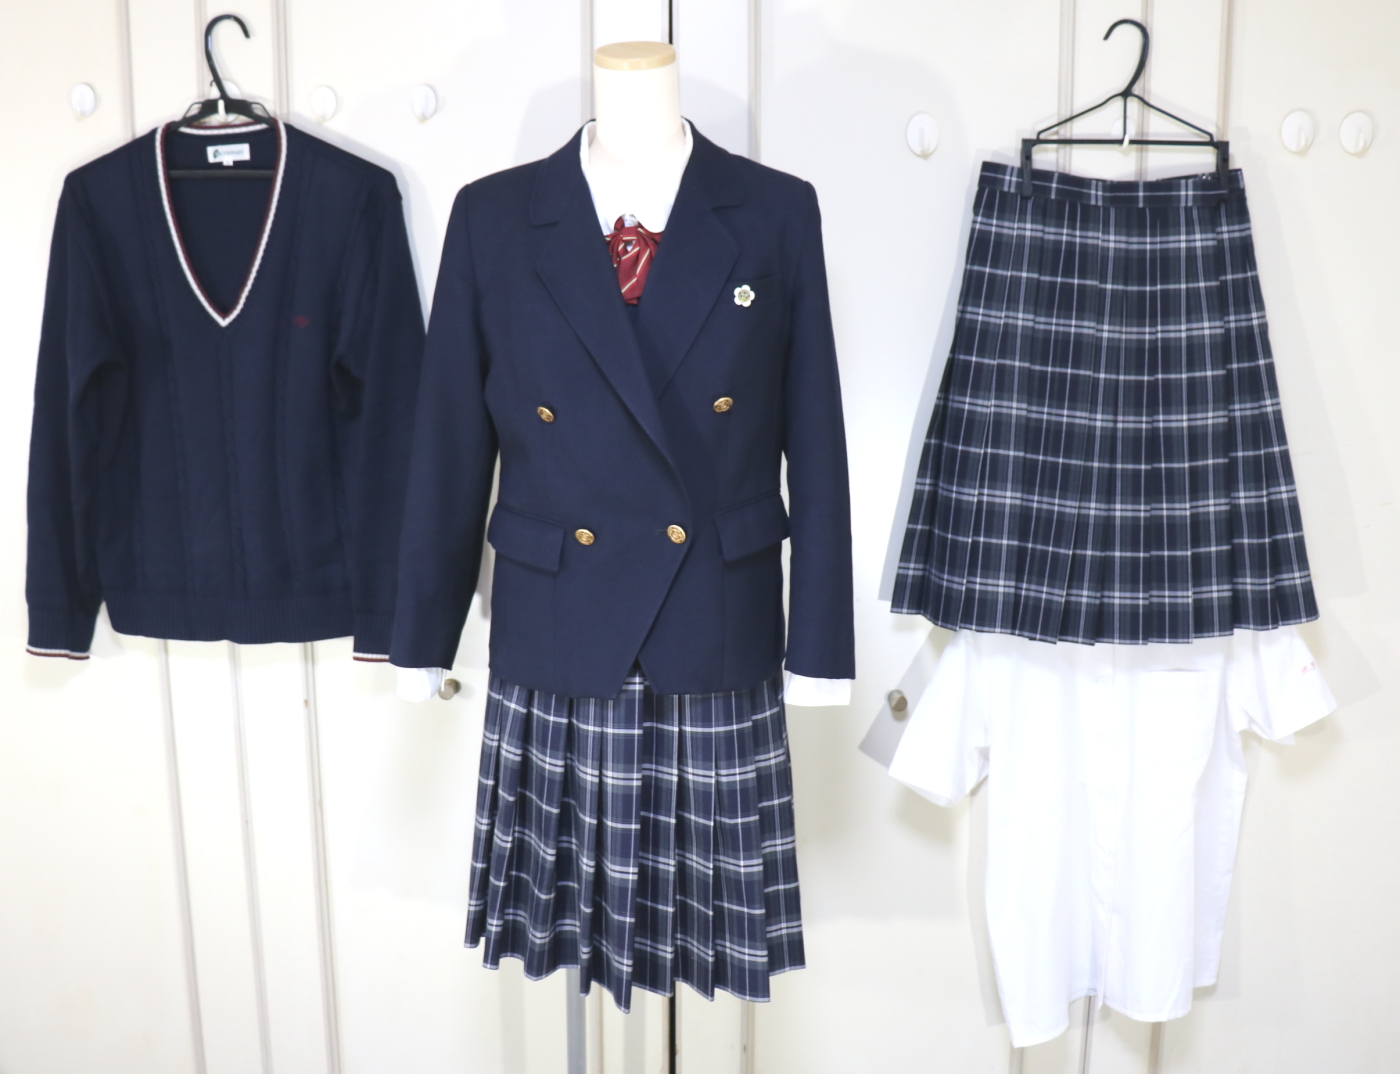 埼玉県立鴻巣女子高校 ブレザー制服を買取させていただきました 制服買取東京